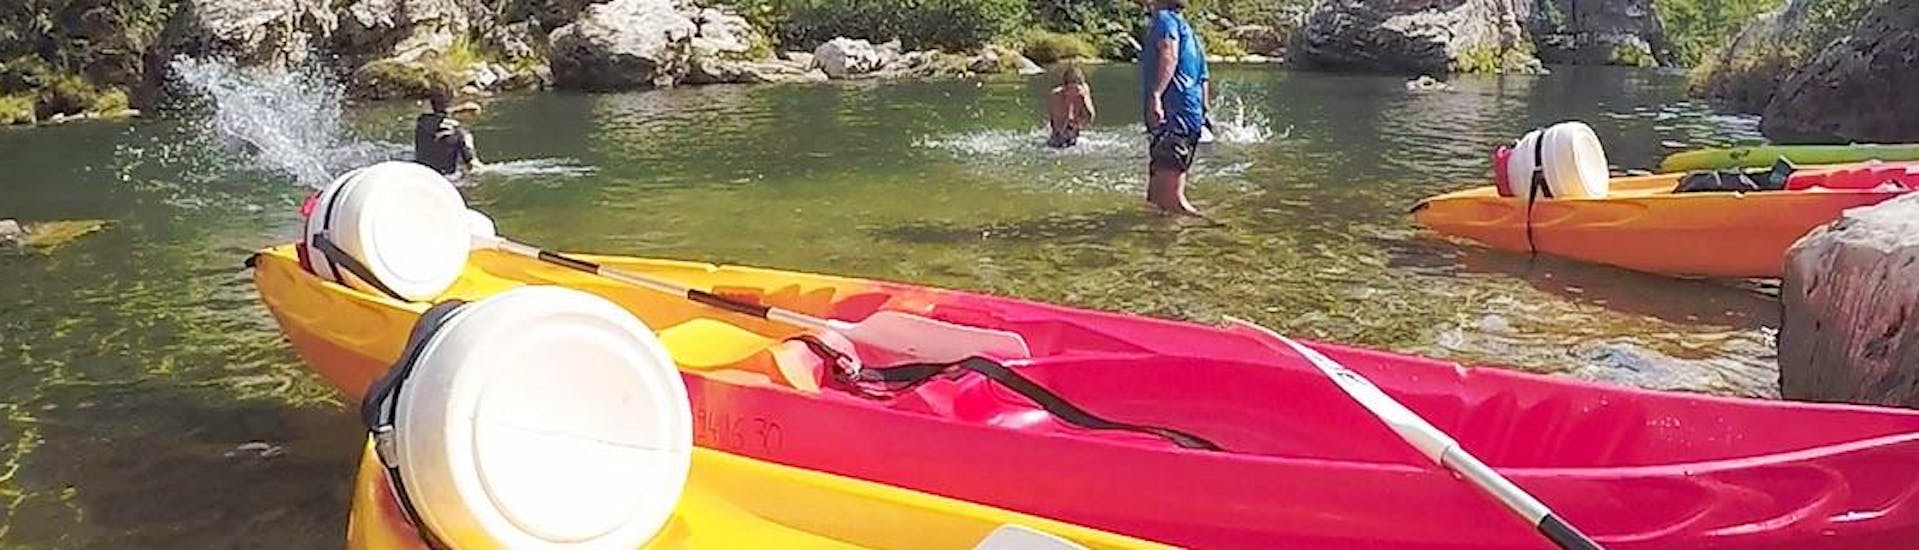 Personnes faisant une location de canoë-kayak sur le Tarn avec Sun VTT Canoë.